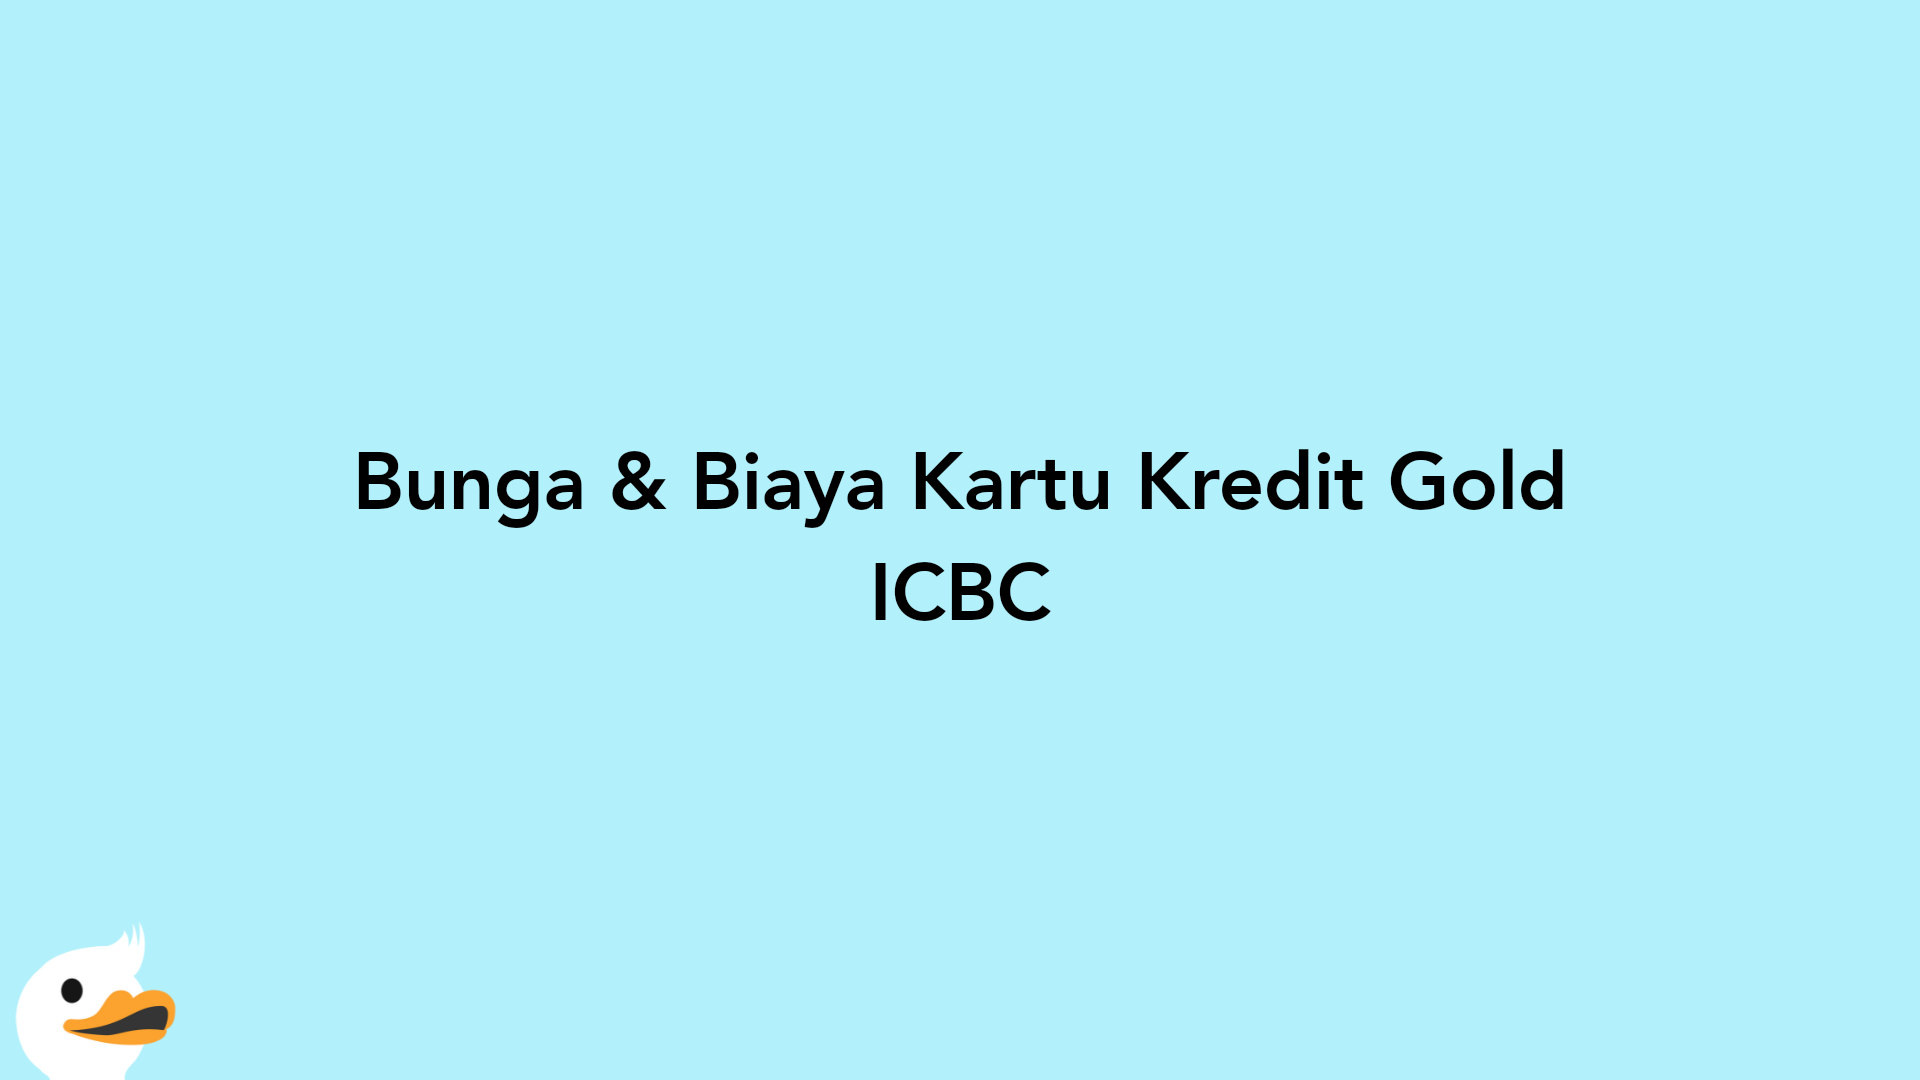 Bunga & Biaya Kartu Kredit Gold ICBC